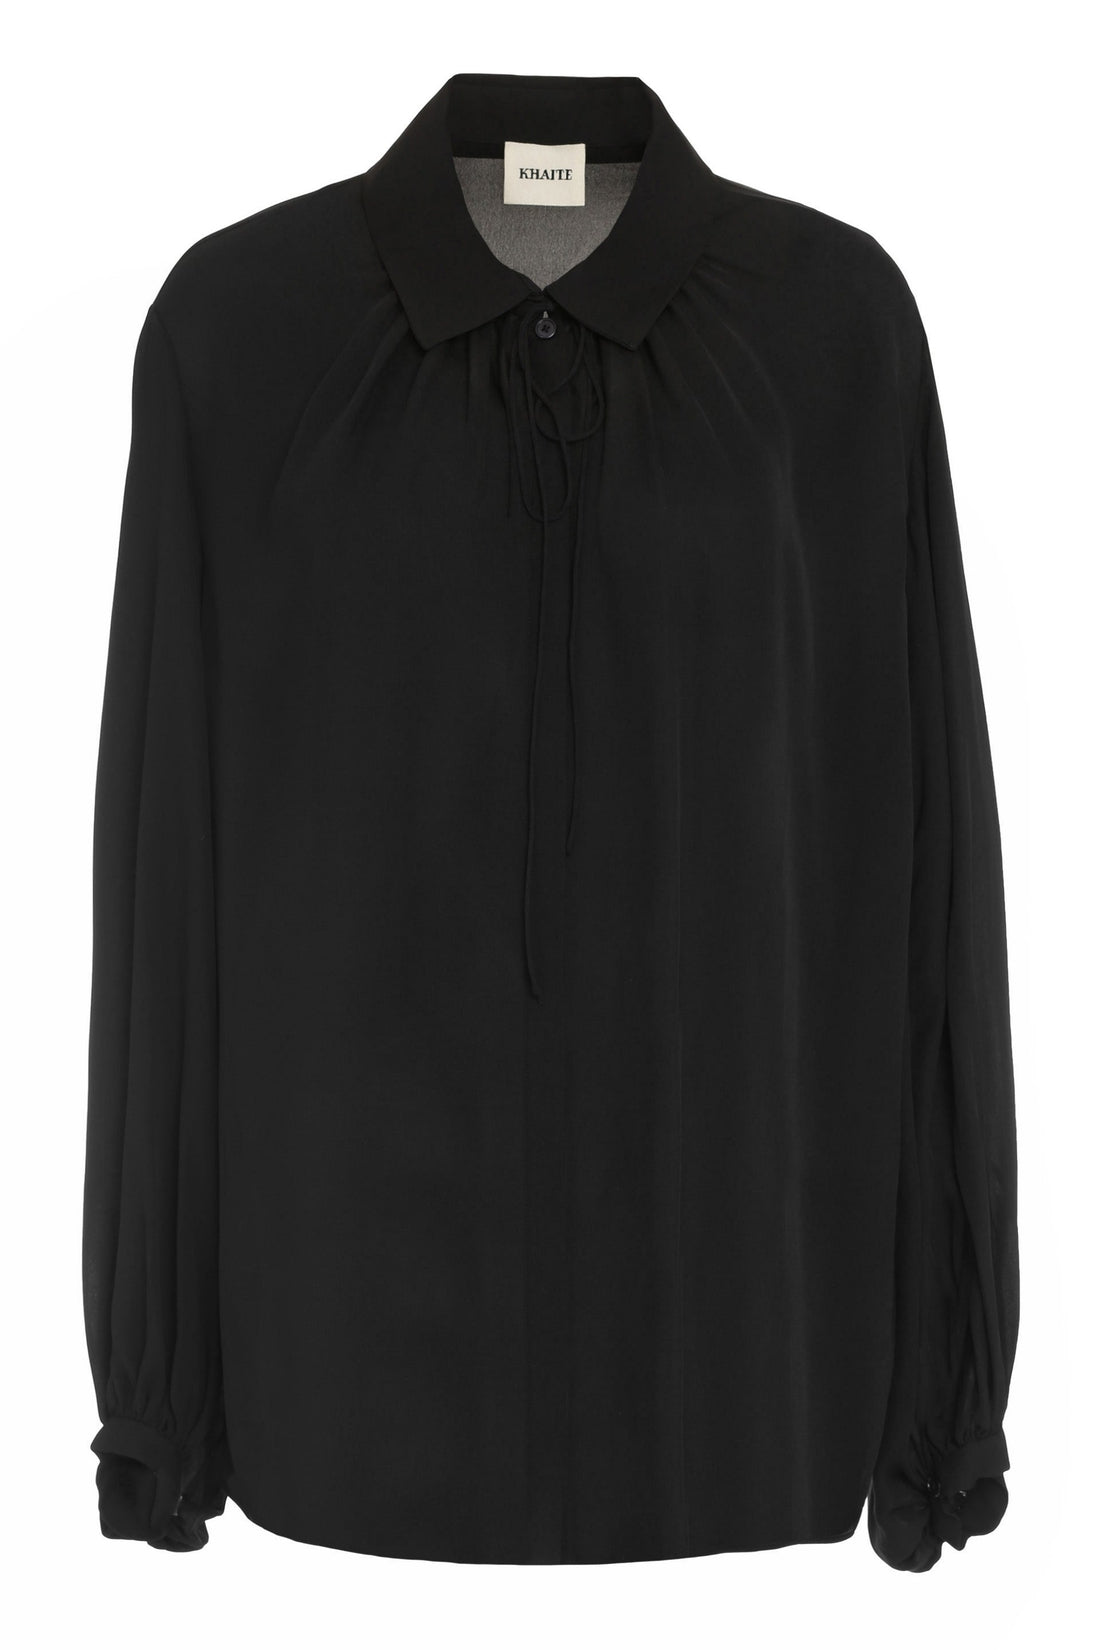 Khaite-OUTLET-SALE-Frances silk blouse-ARCHIVIST